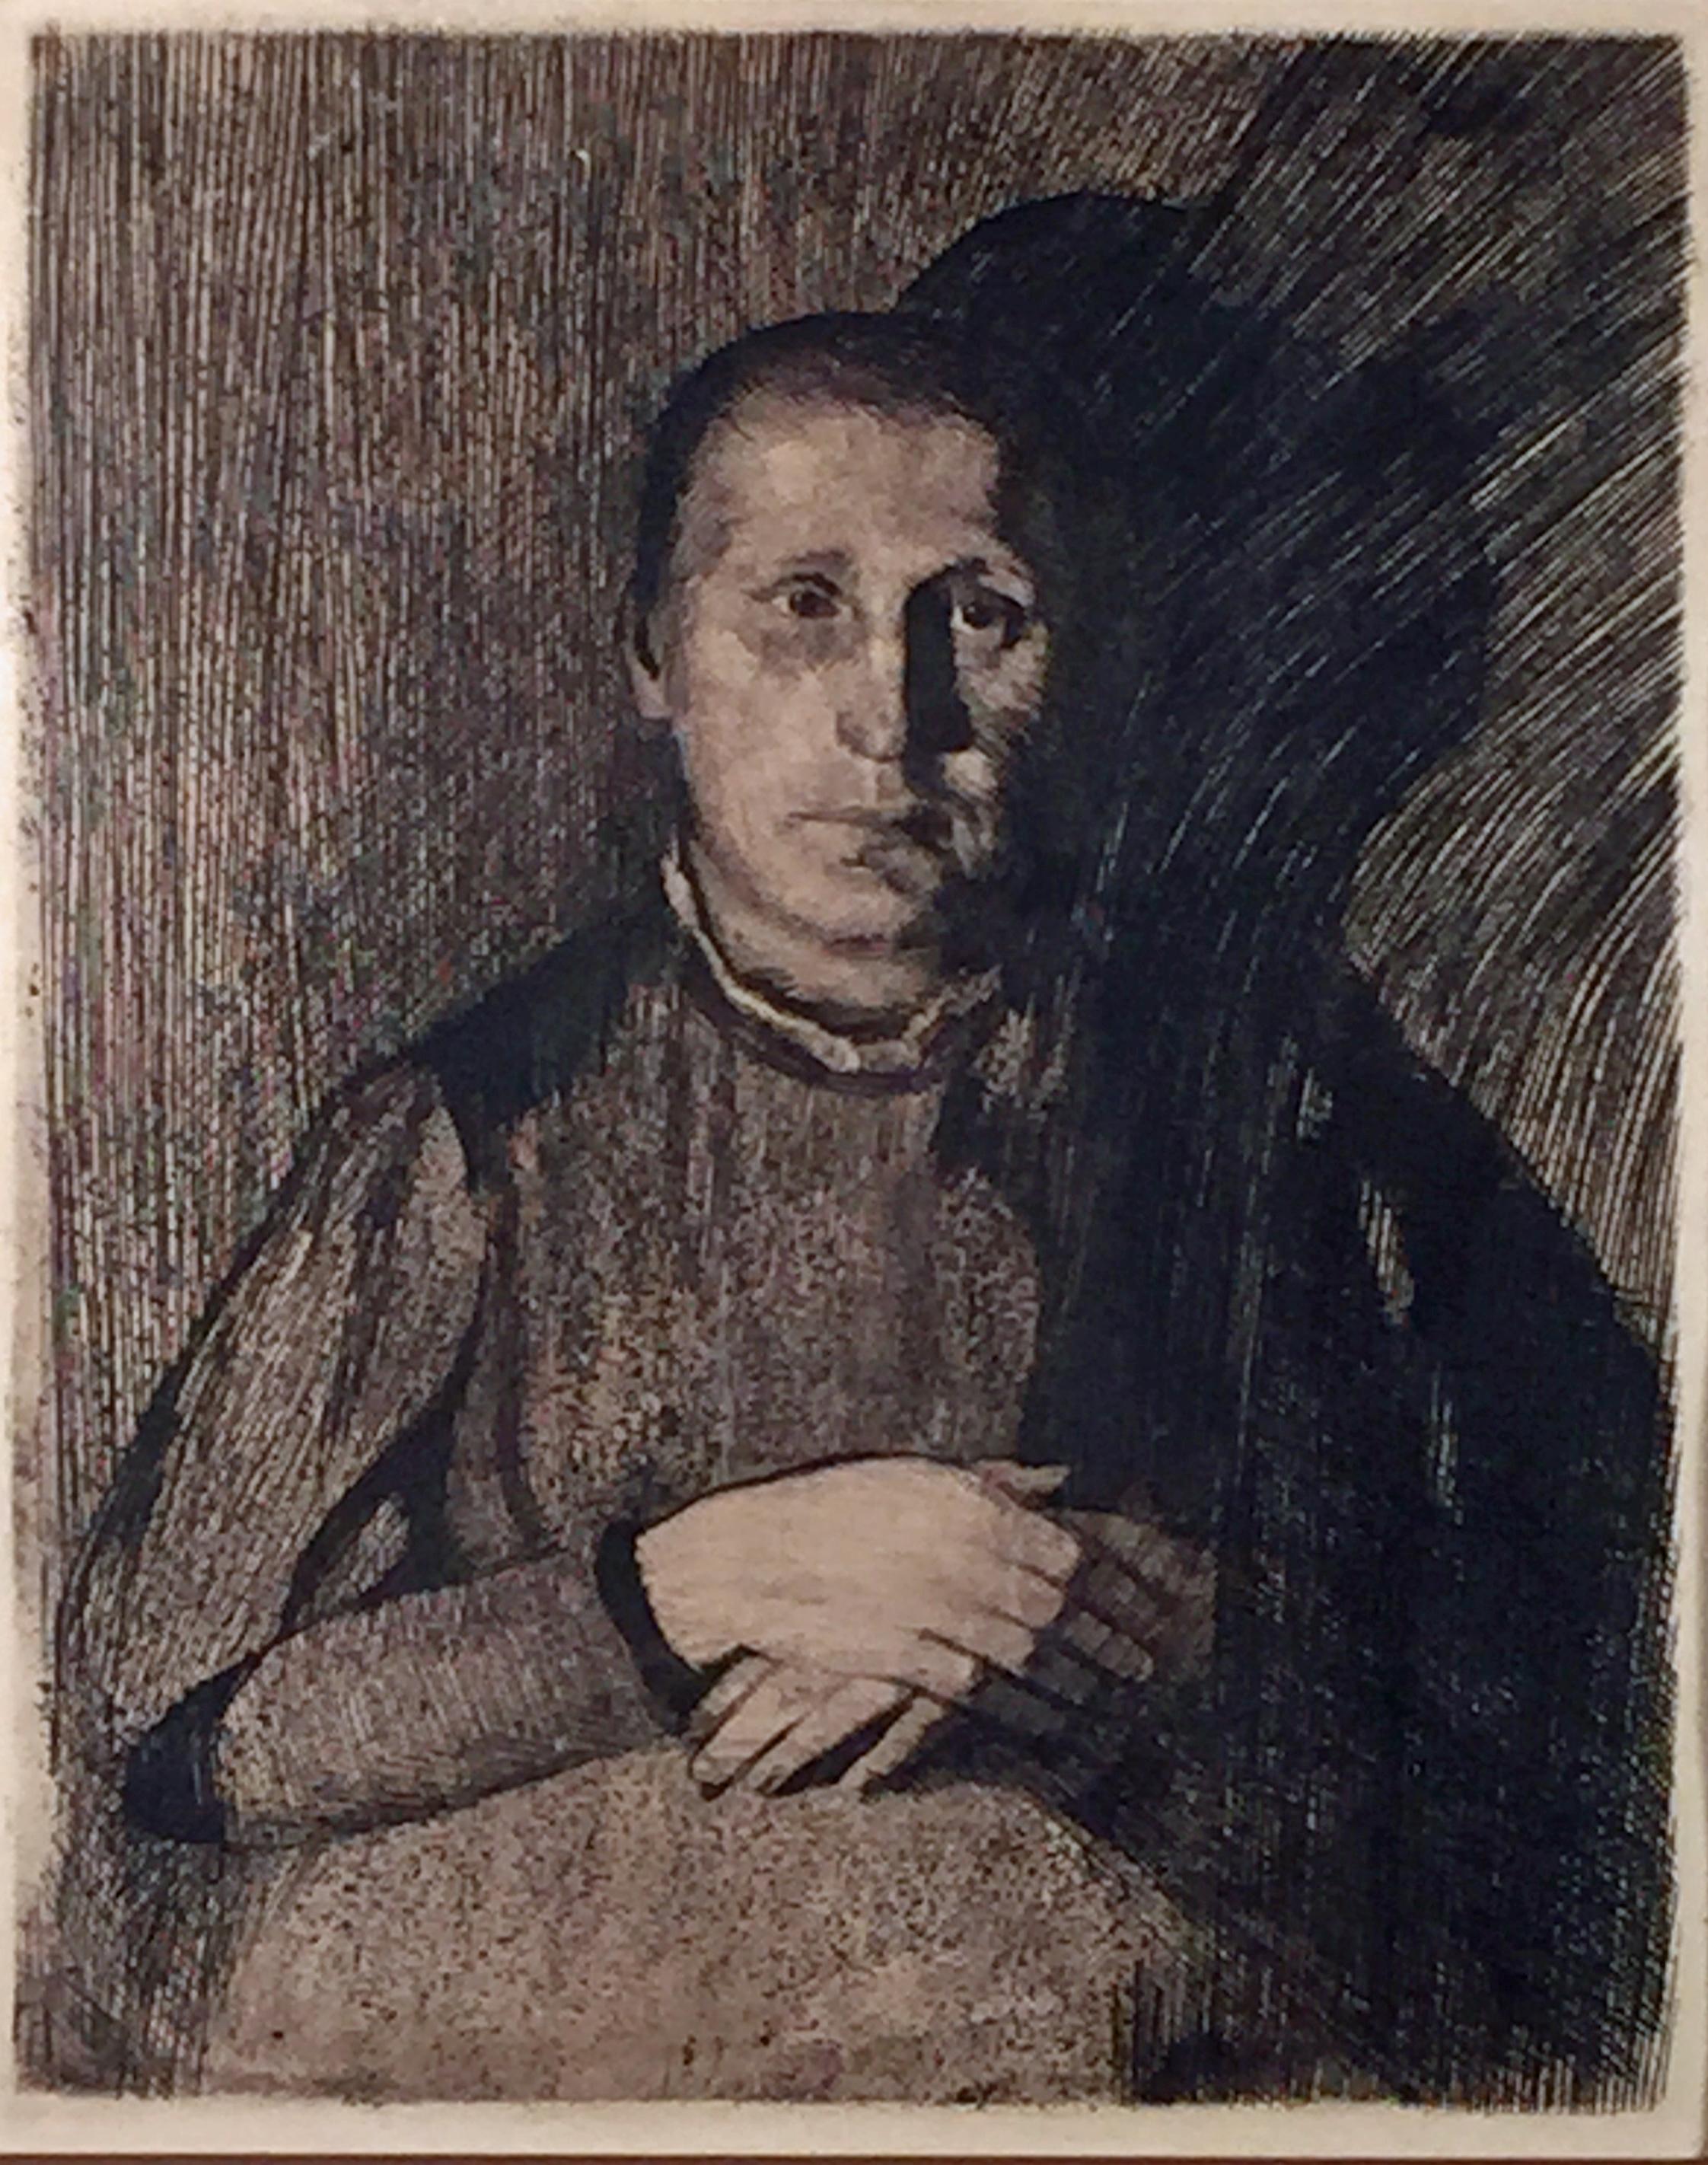 Käthe Kollwitz Portrait Print -  FRAU MIT UBEREINANDERGELEGTEN HANDEN (Woman With Folded Hands)